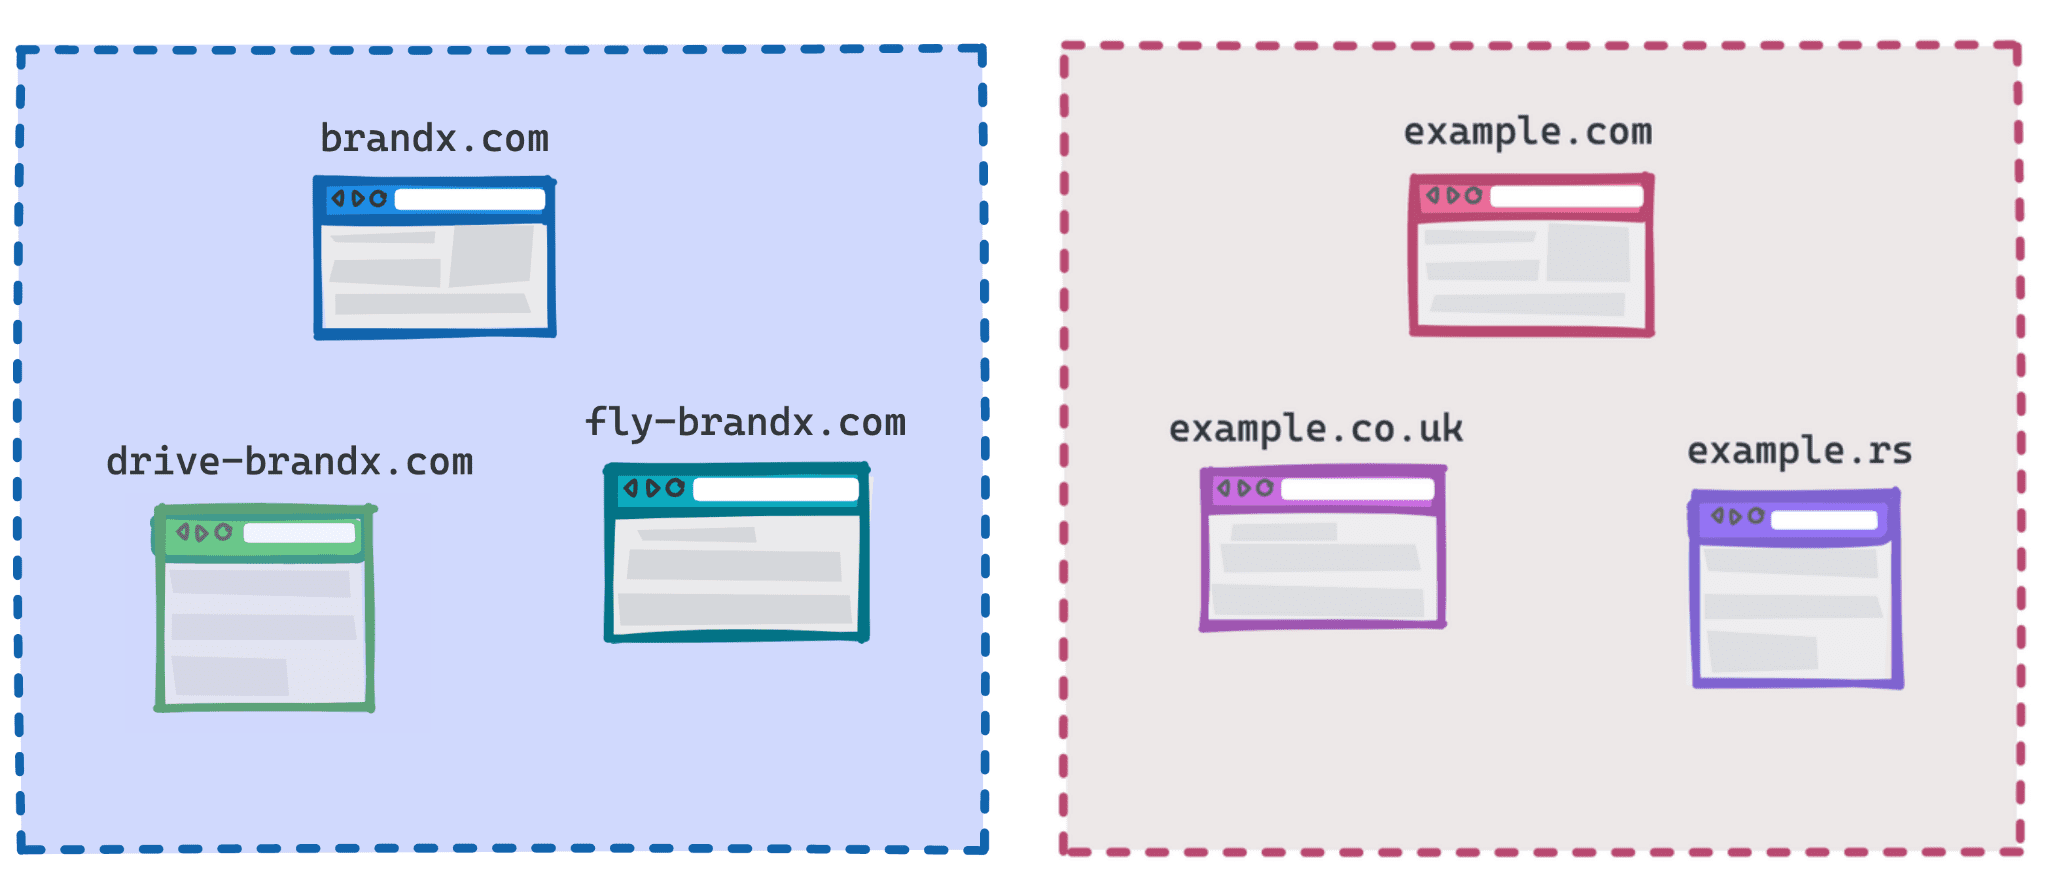 แผนภาพแสดง brandx.com, fly-brandx.com และ drive-brandx.com เป็นกลุ่มหนึ่ง และ example.com, example.rs, example.co.uk เป็นอีกกลุ่ม